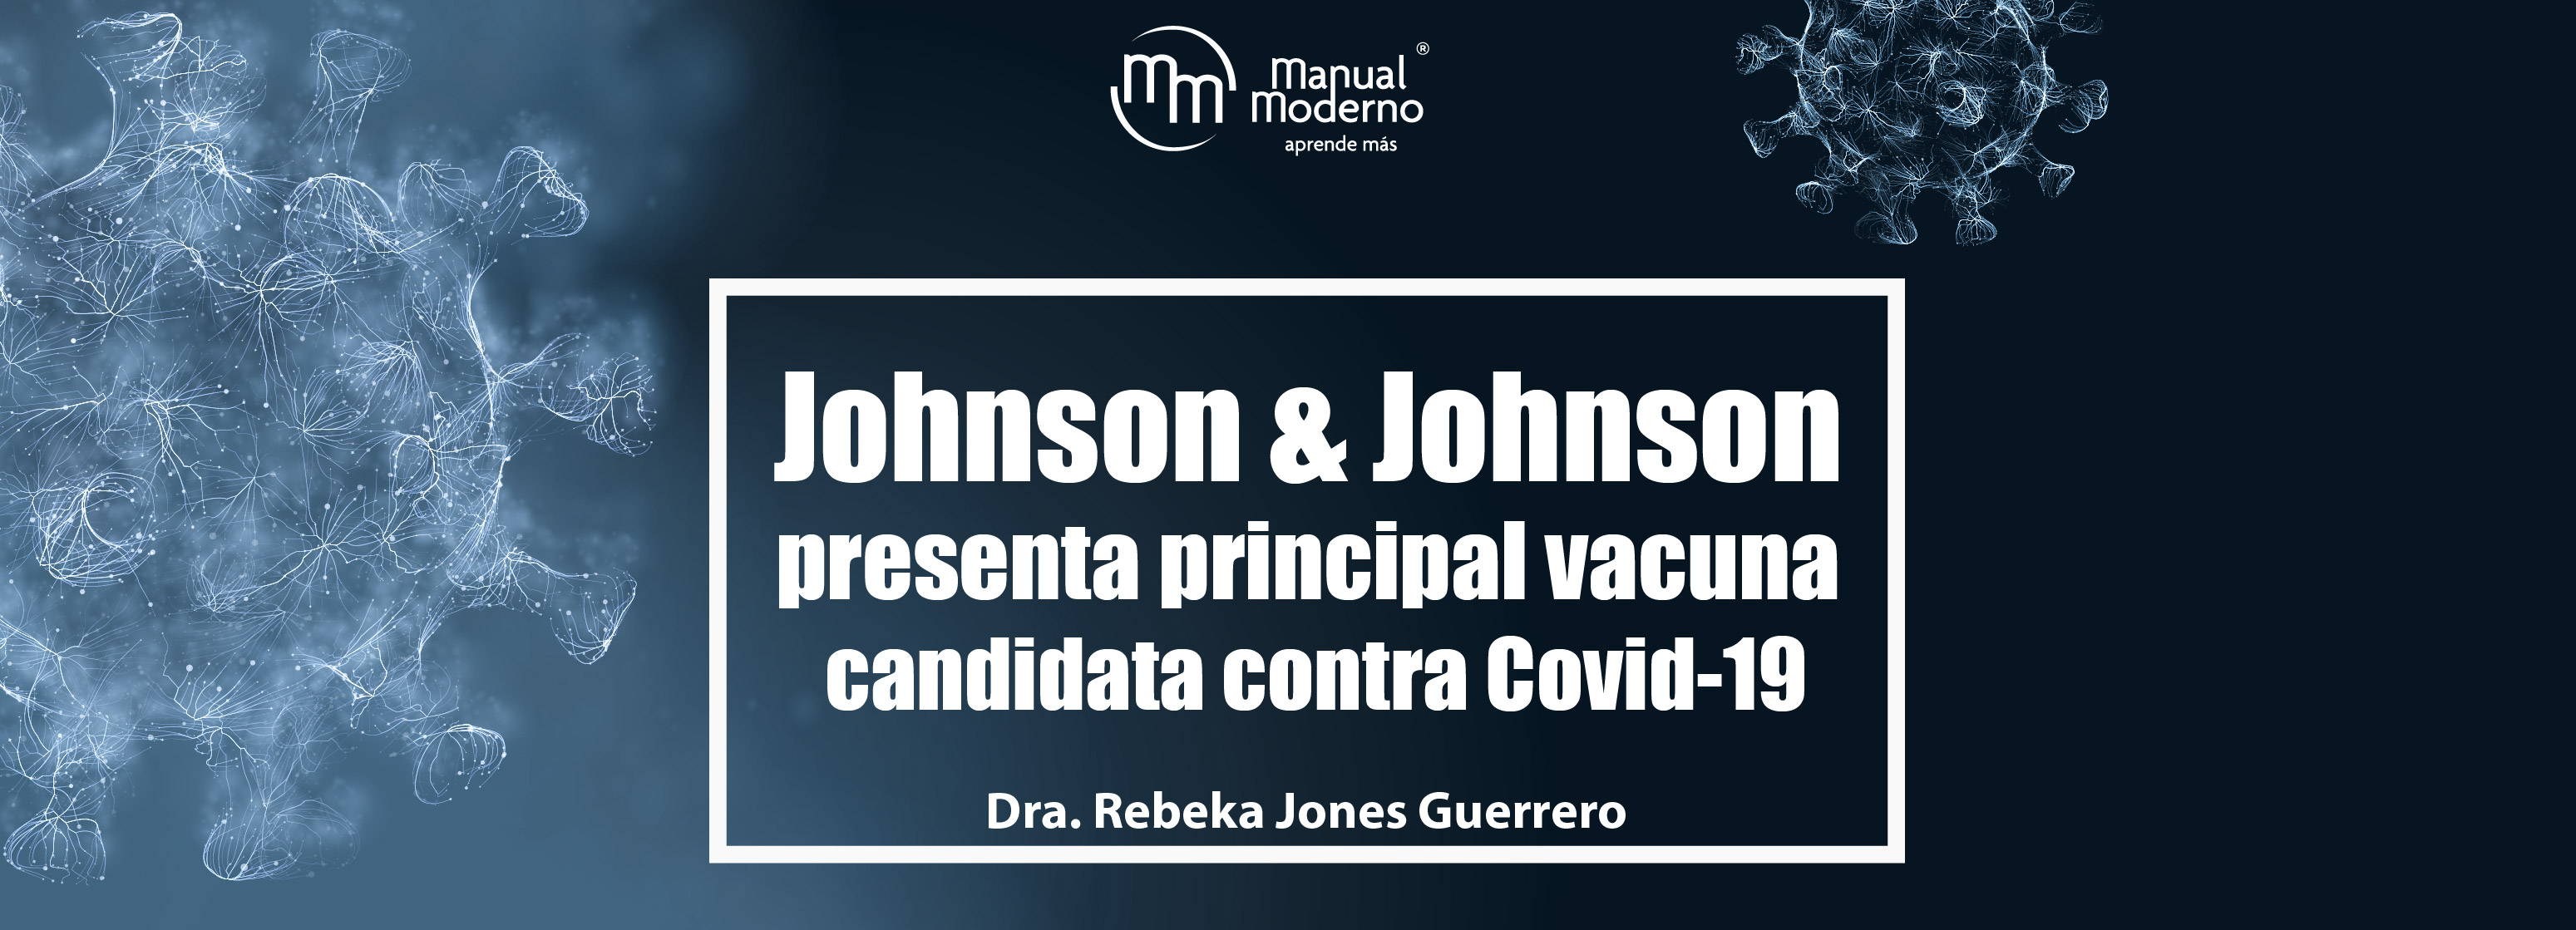 Johnson & Johnson presenta principal vacuna candidata contra Covid-19